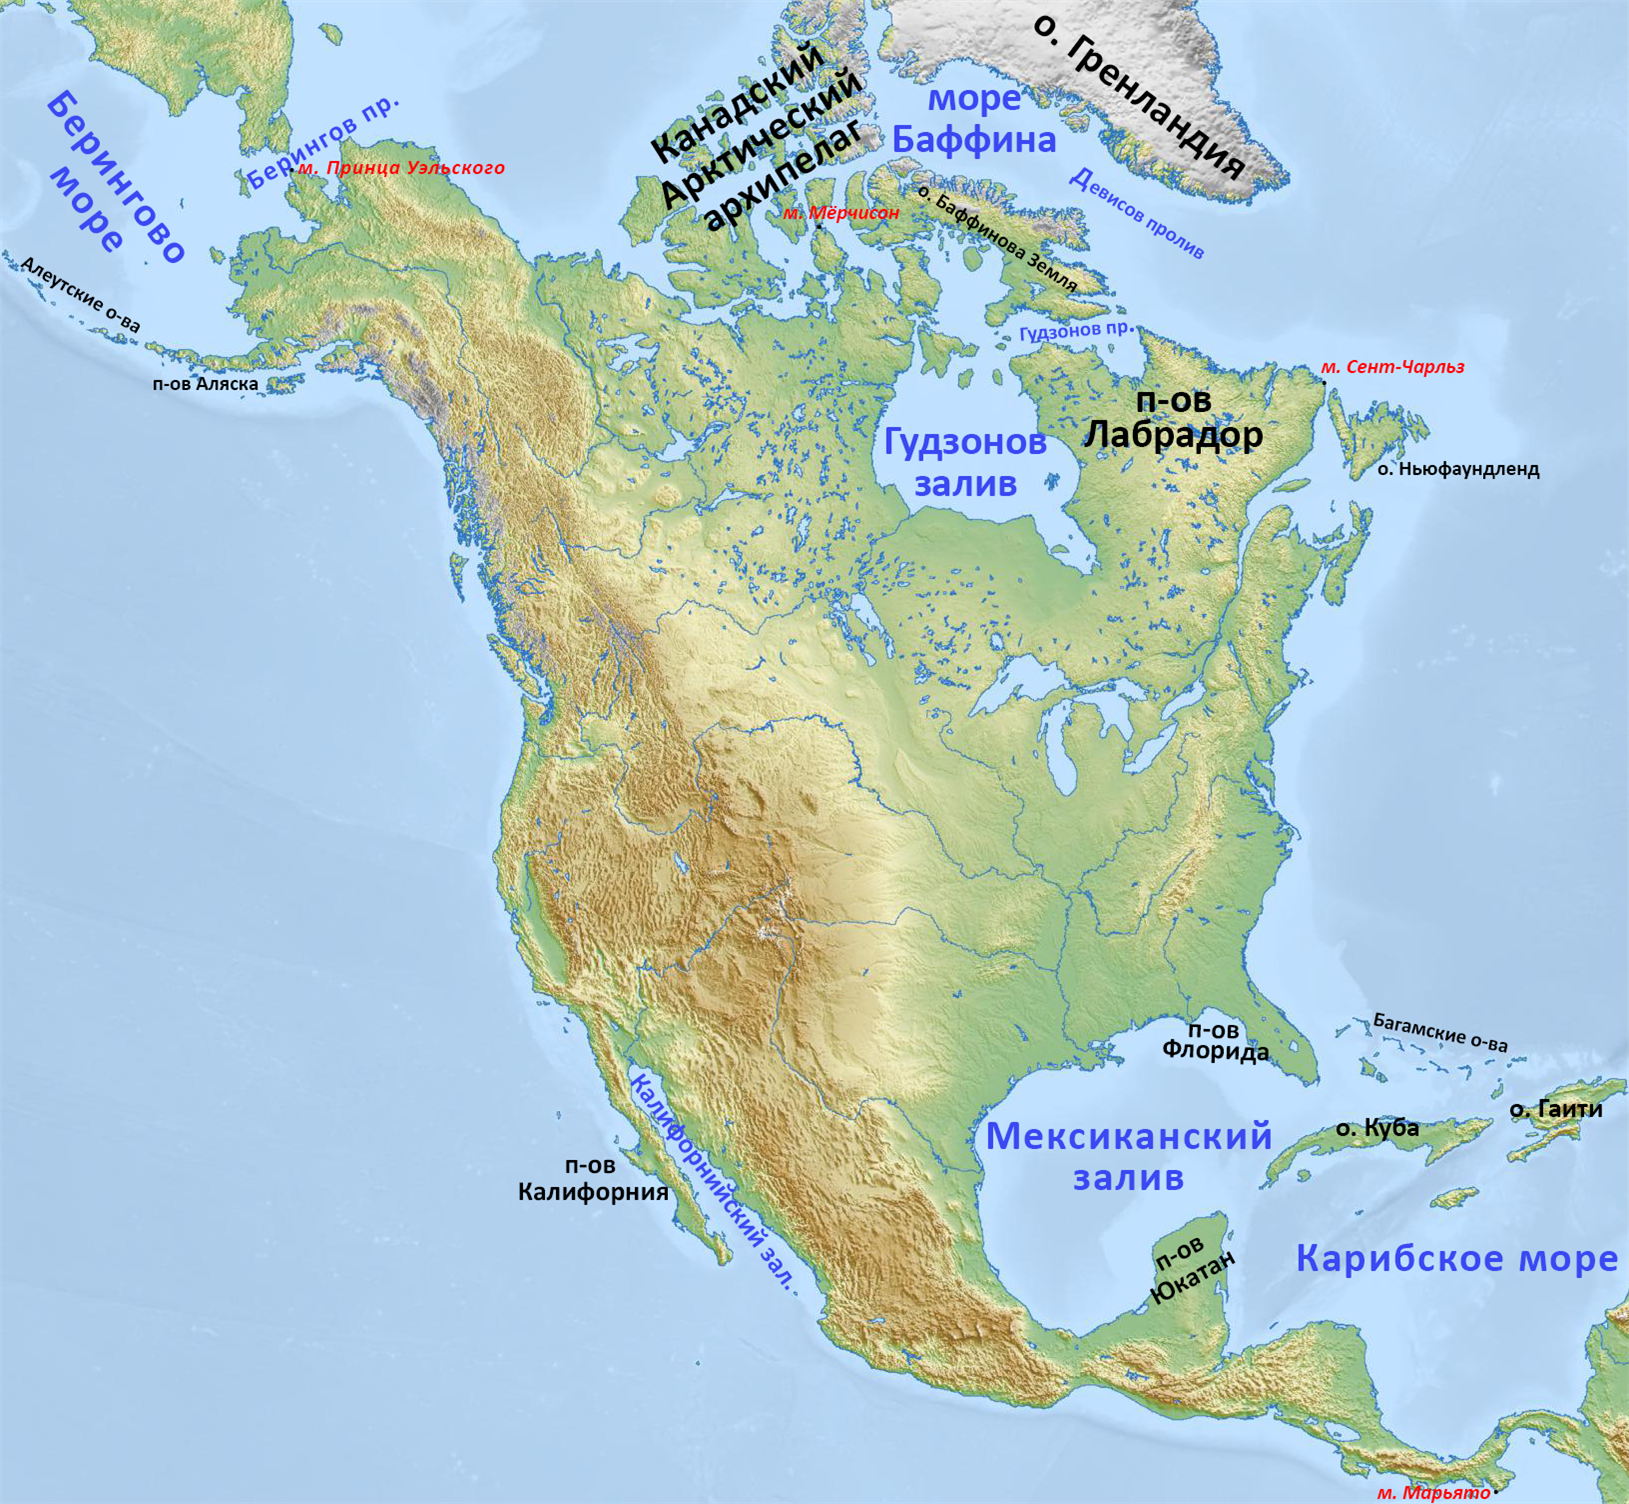 Заливы северной америки на карте 7 класс. Физ карта Северной Америки. ГП Северной Америки 7 класс карта. Полуострова Северной Америки на карте. Остров лабрадор на карте Северной Америки.